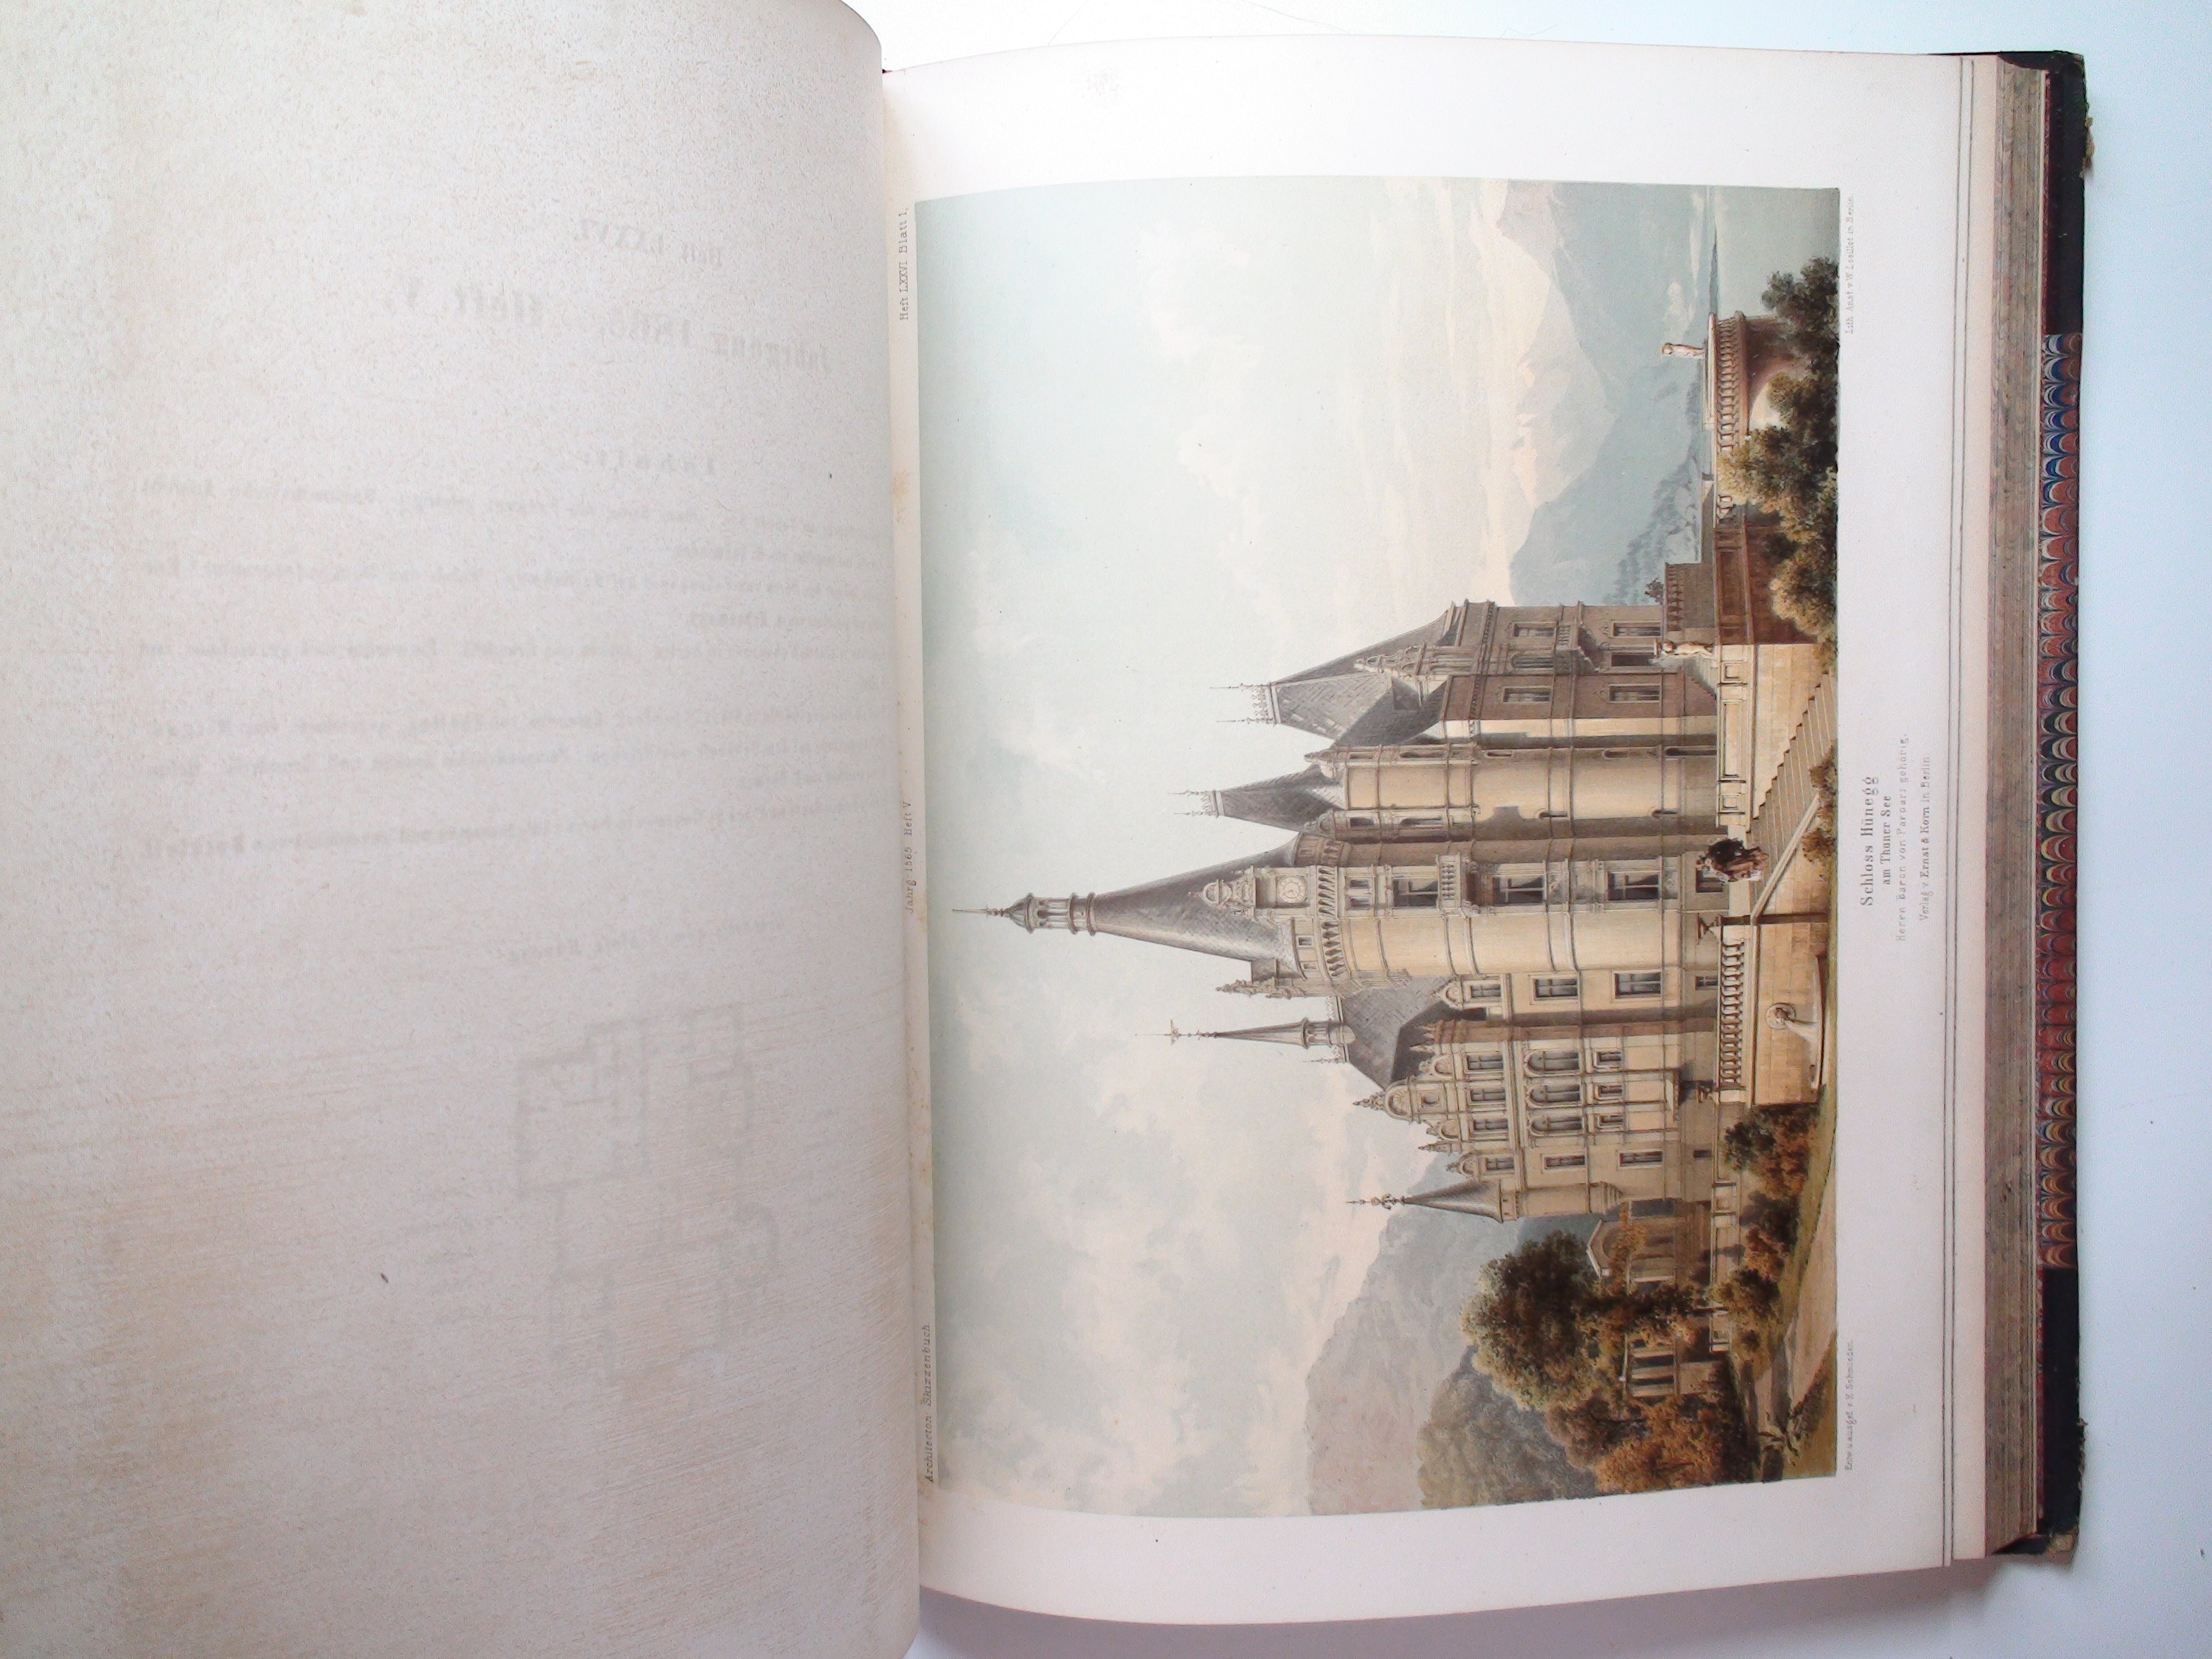 Architektonisches Skizzenbuch, 2 Vols of German Architectural Book, Engravings